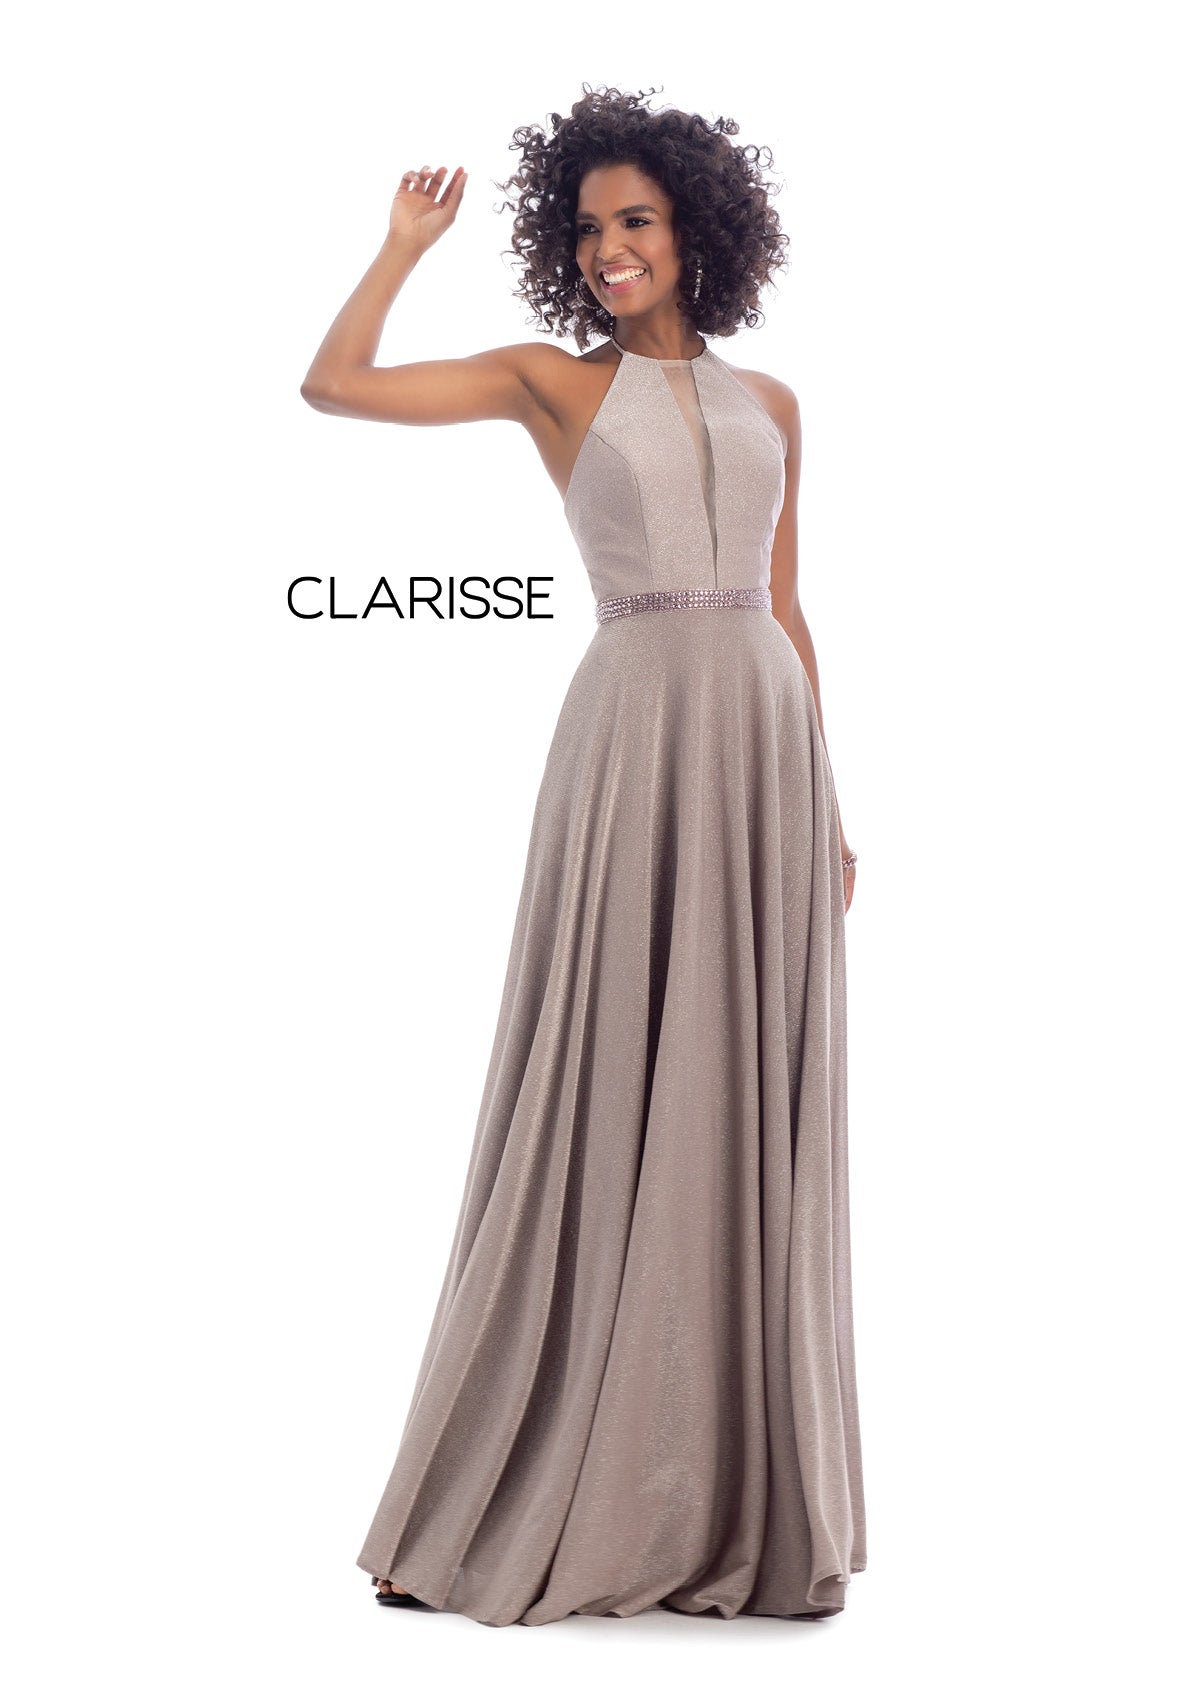 Style #8051 Clarisse